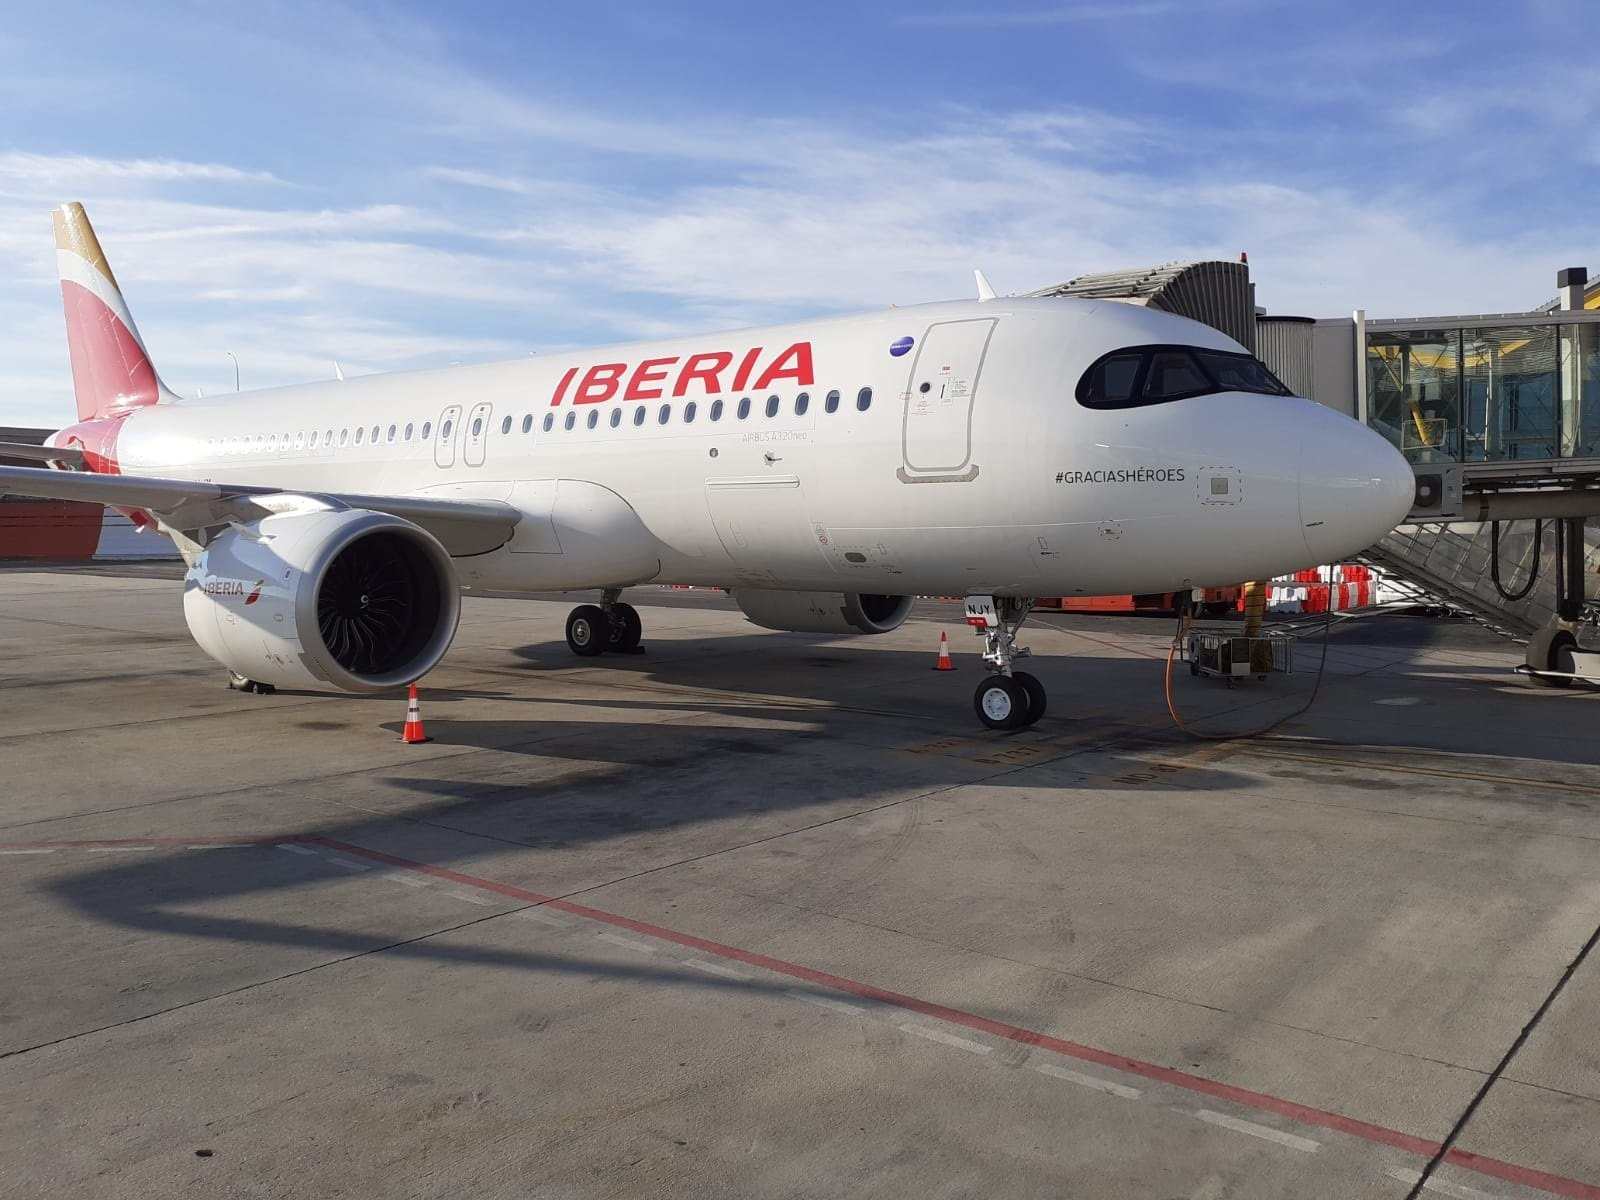 Iberia operarà 300 vols xàrter aquest estiu per a creuers i turoperadors